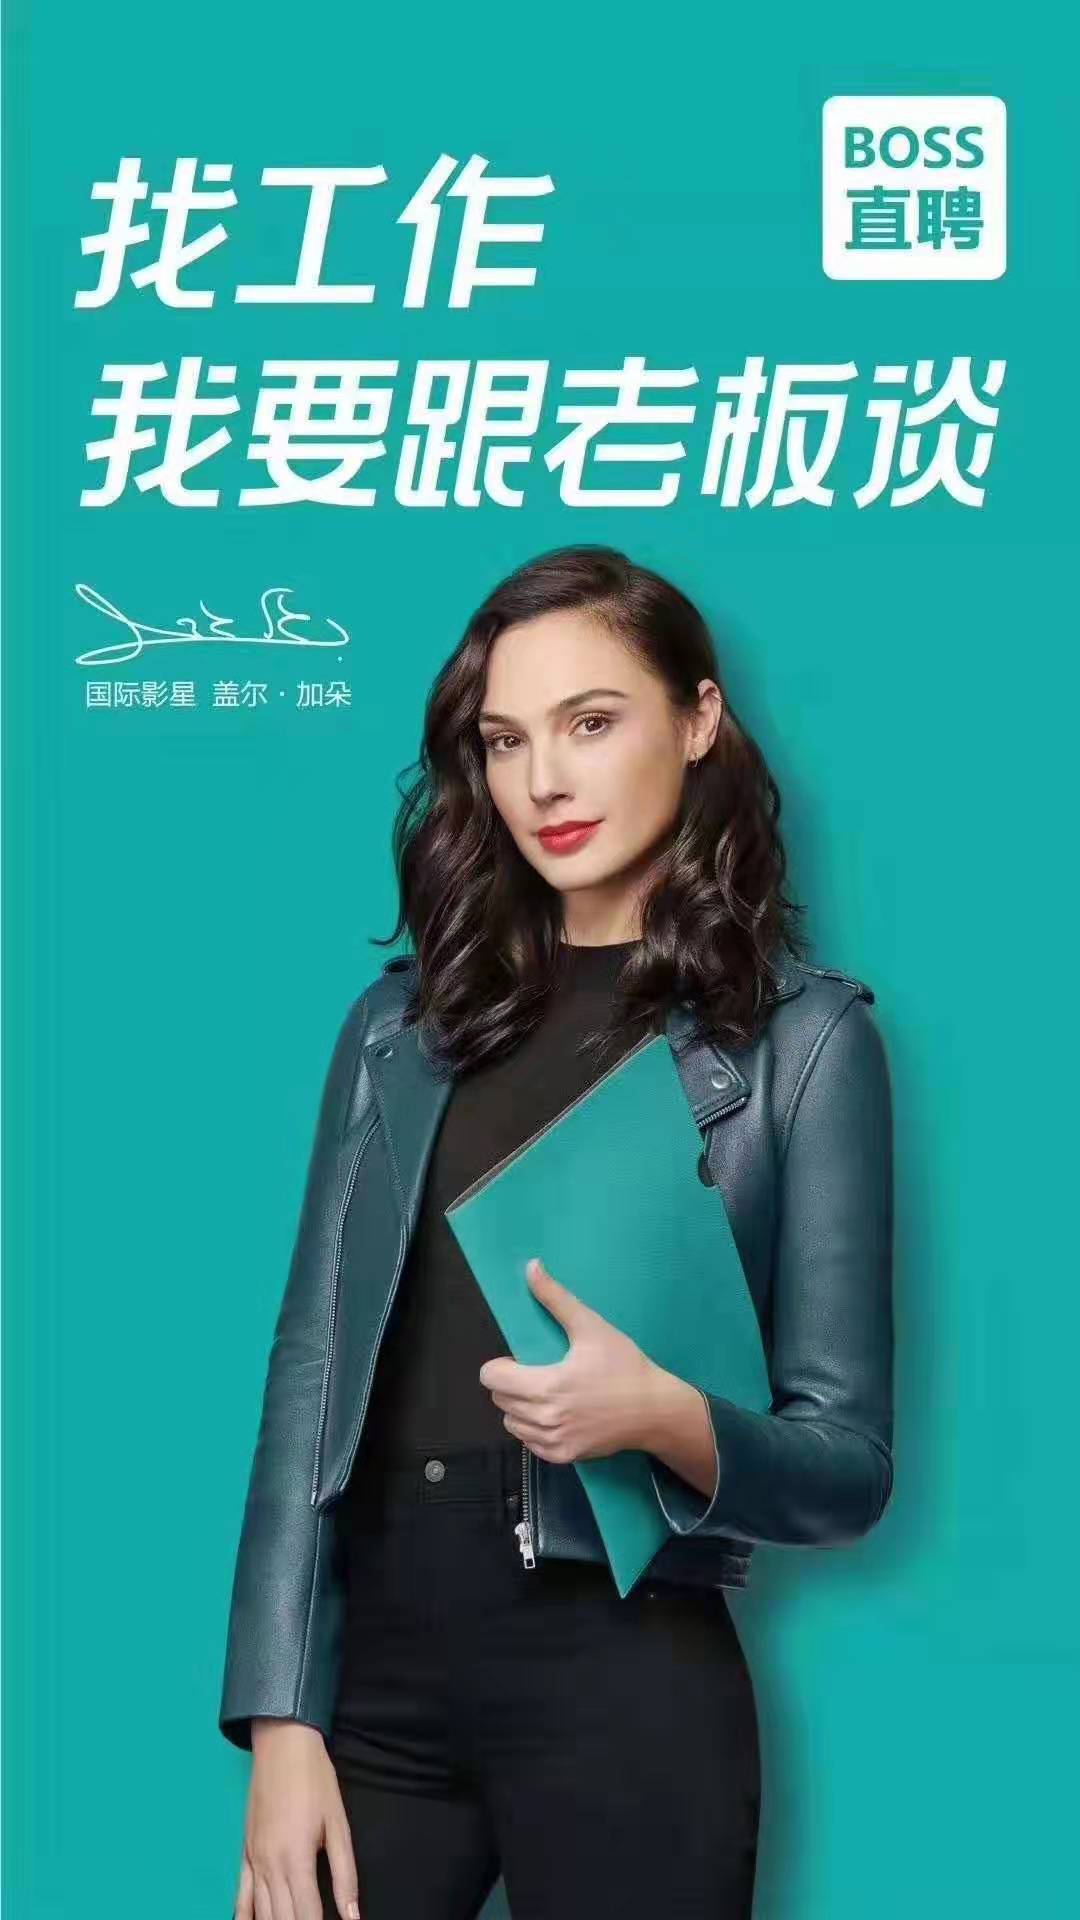 此外,boss直聘还宣布新版平面广告已经在北京,上海,广州,深圳,杭州